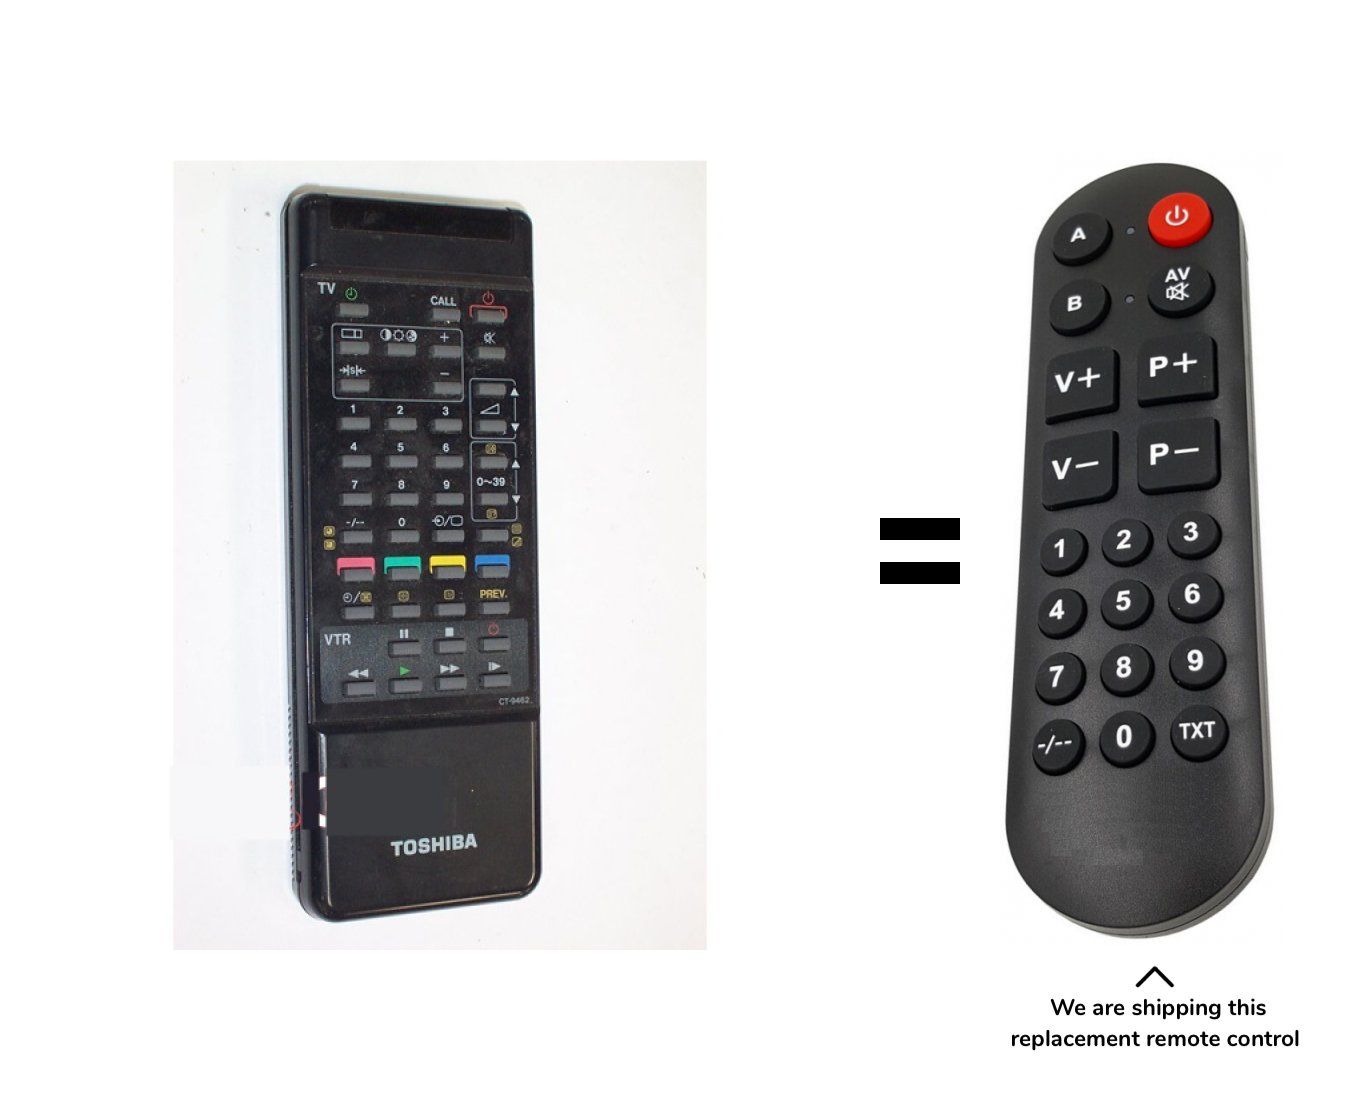 Toshiba 2103BT remote control for seniors